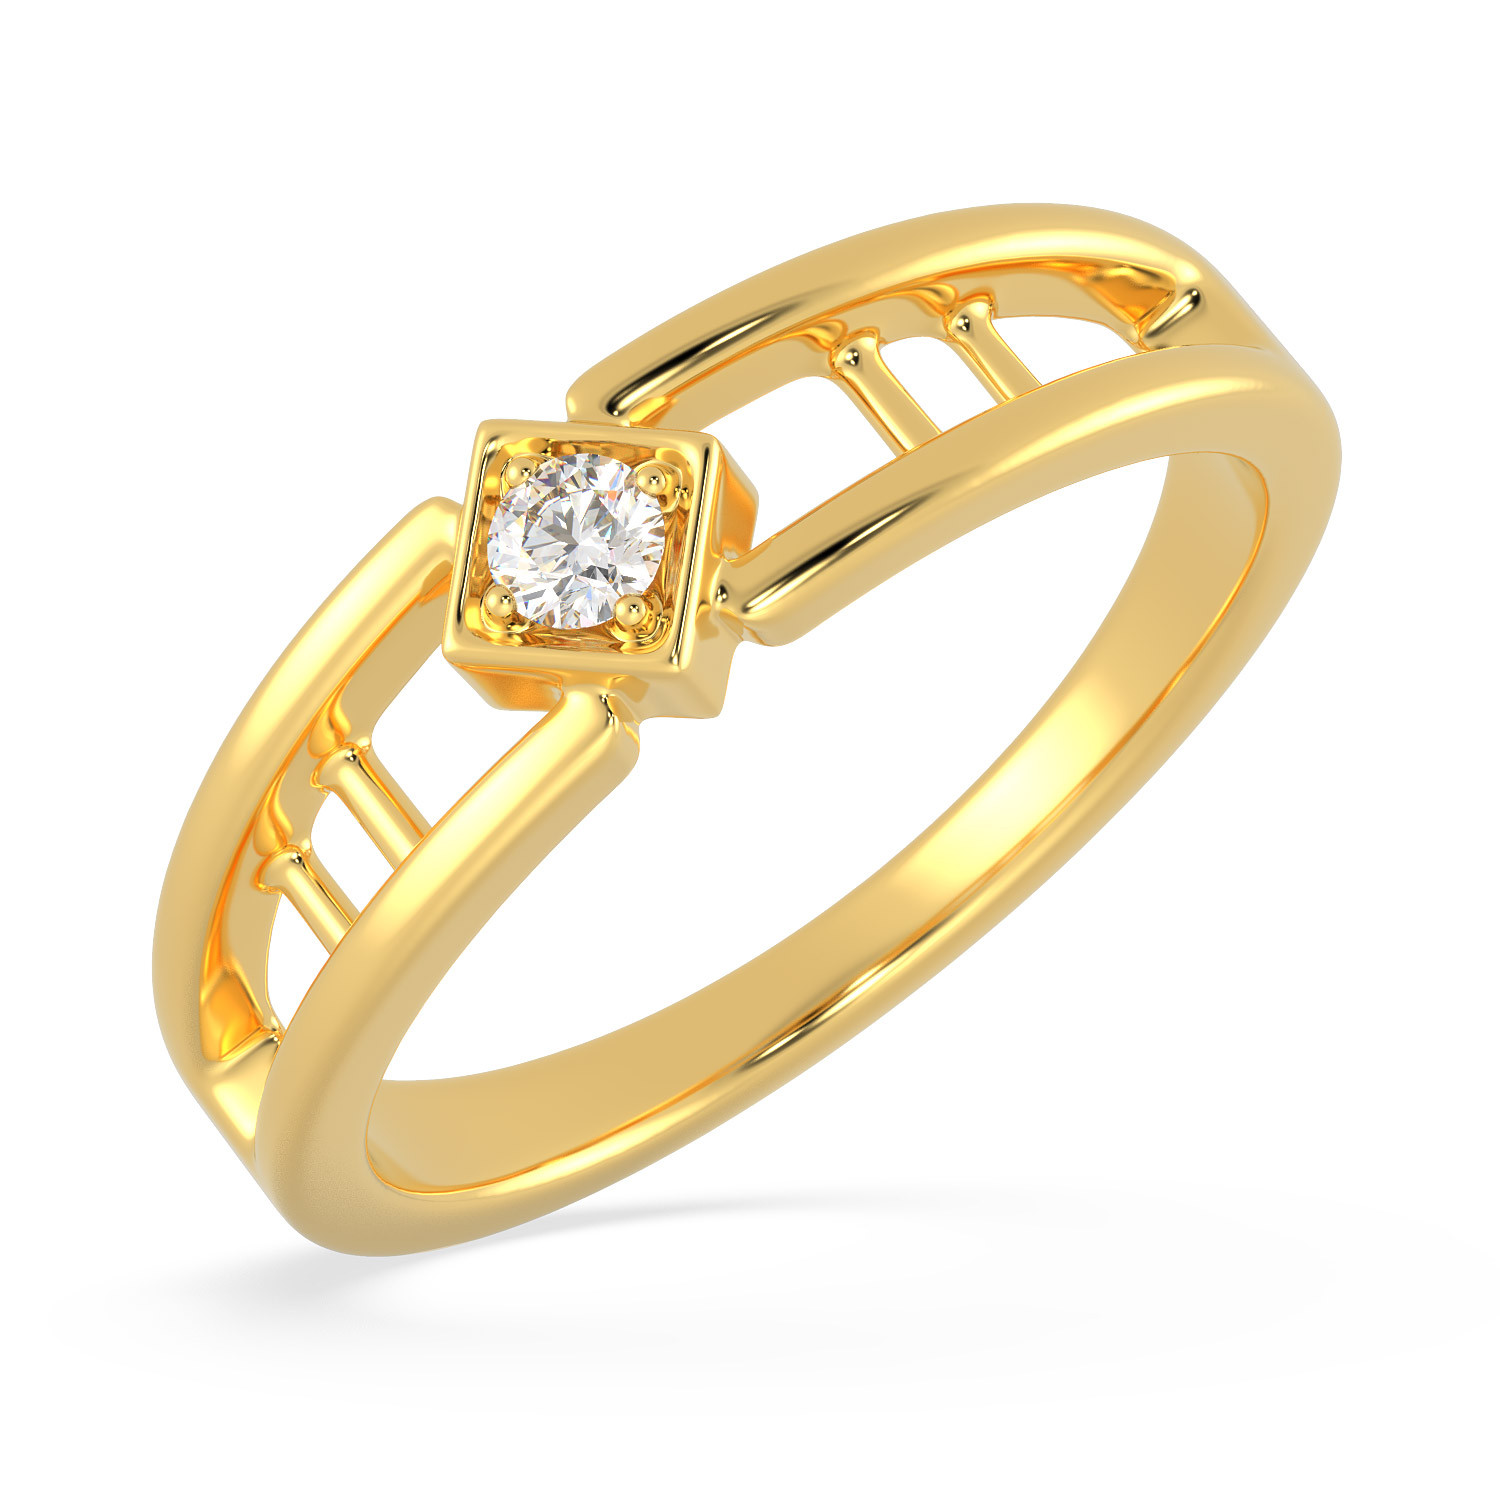 Malabar 22 KT Gold Studded Casual Ring MHAAAAAABEMB